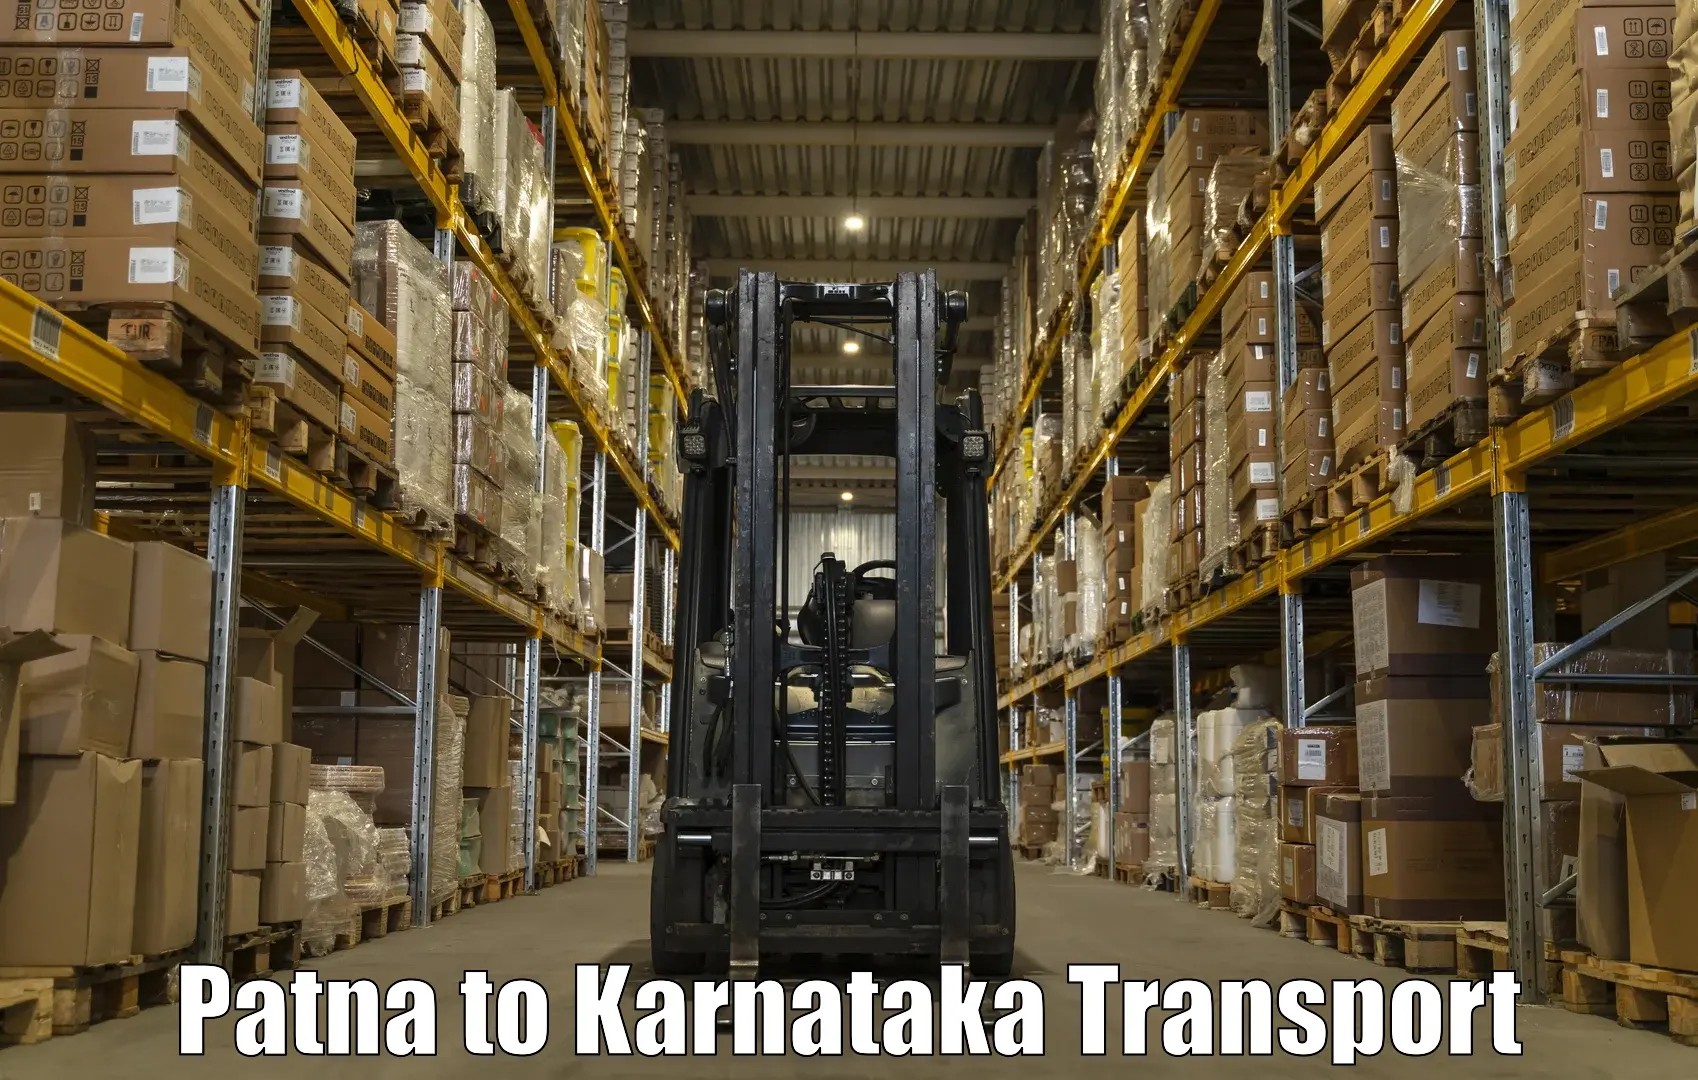 Shipping services Patna to Kanjarakatte